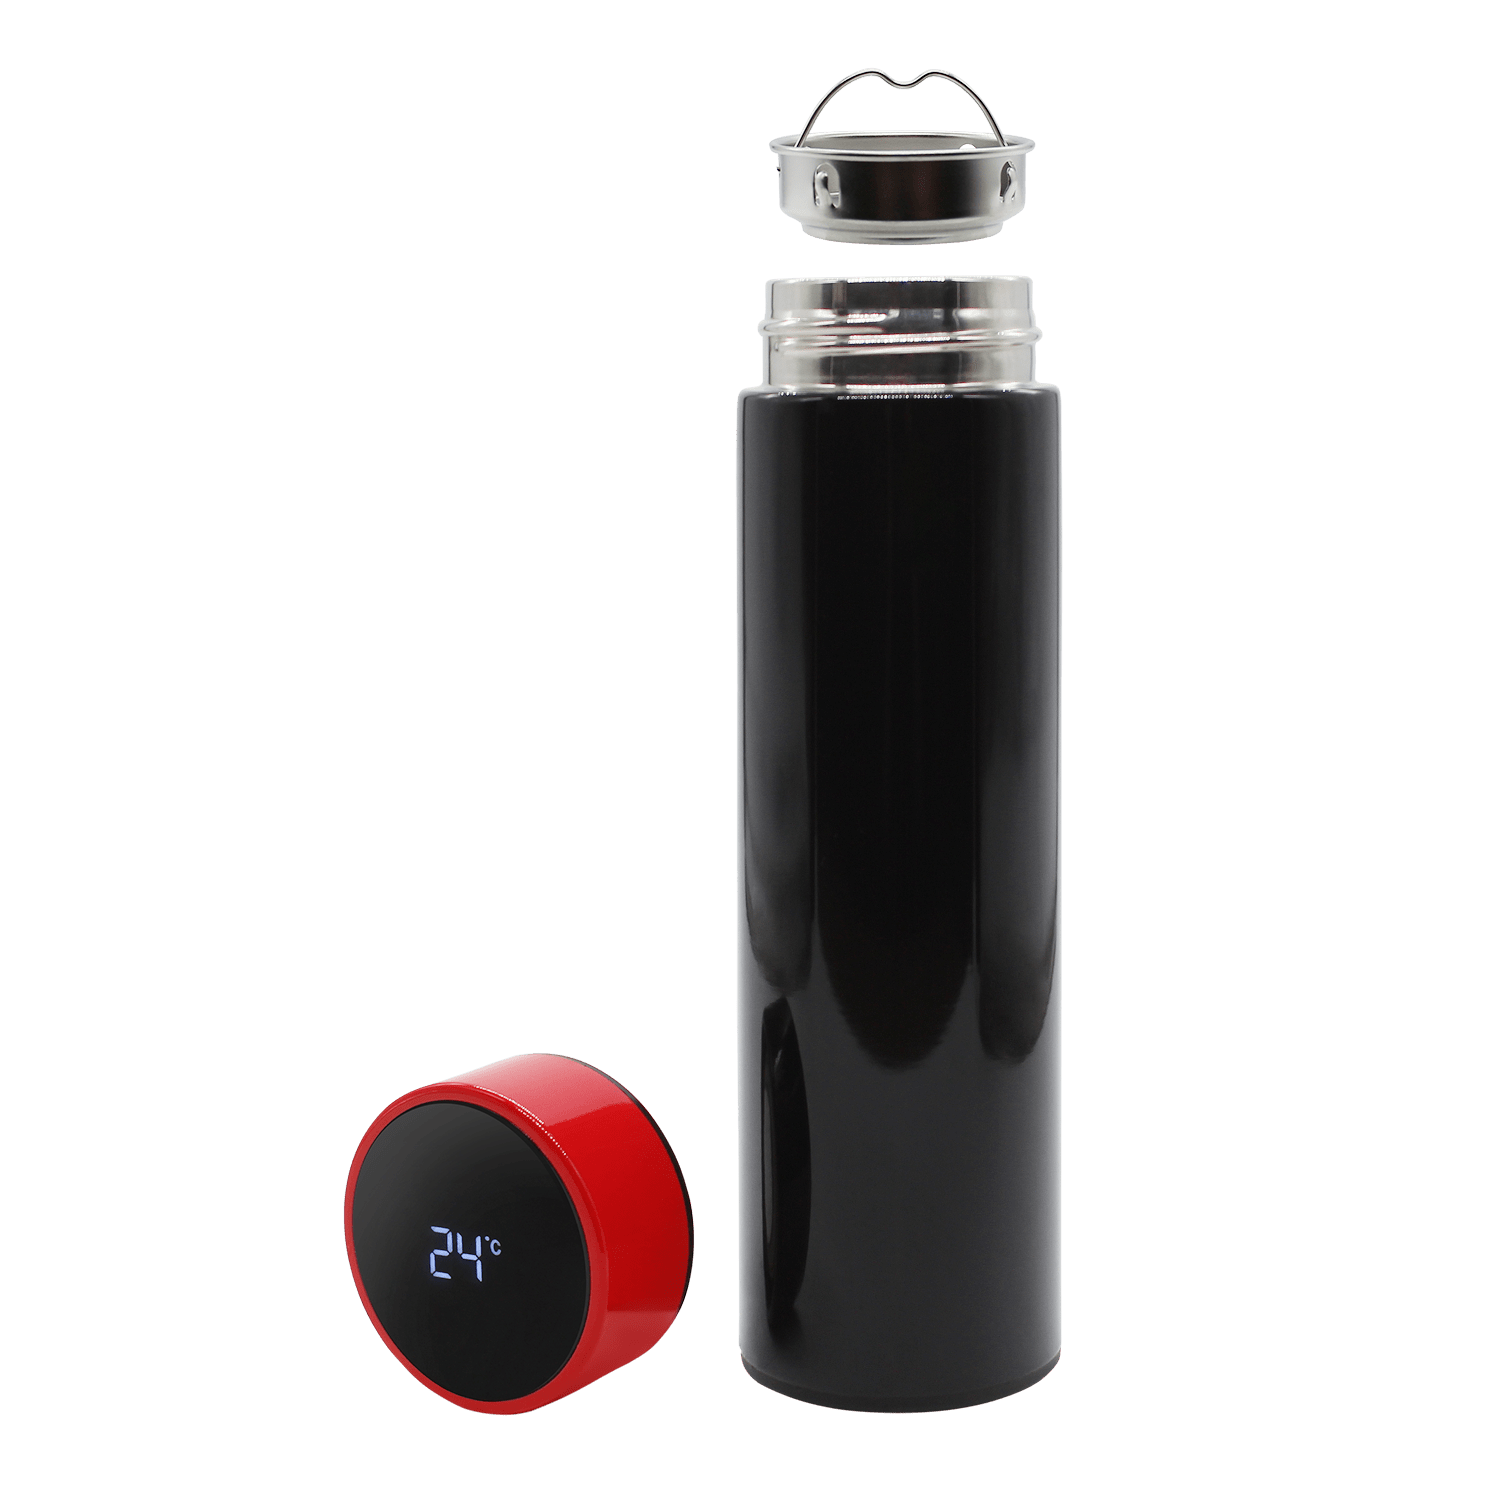 Термос Reactor duo black с датчиком температуры (черный с красным)